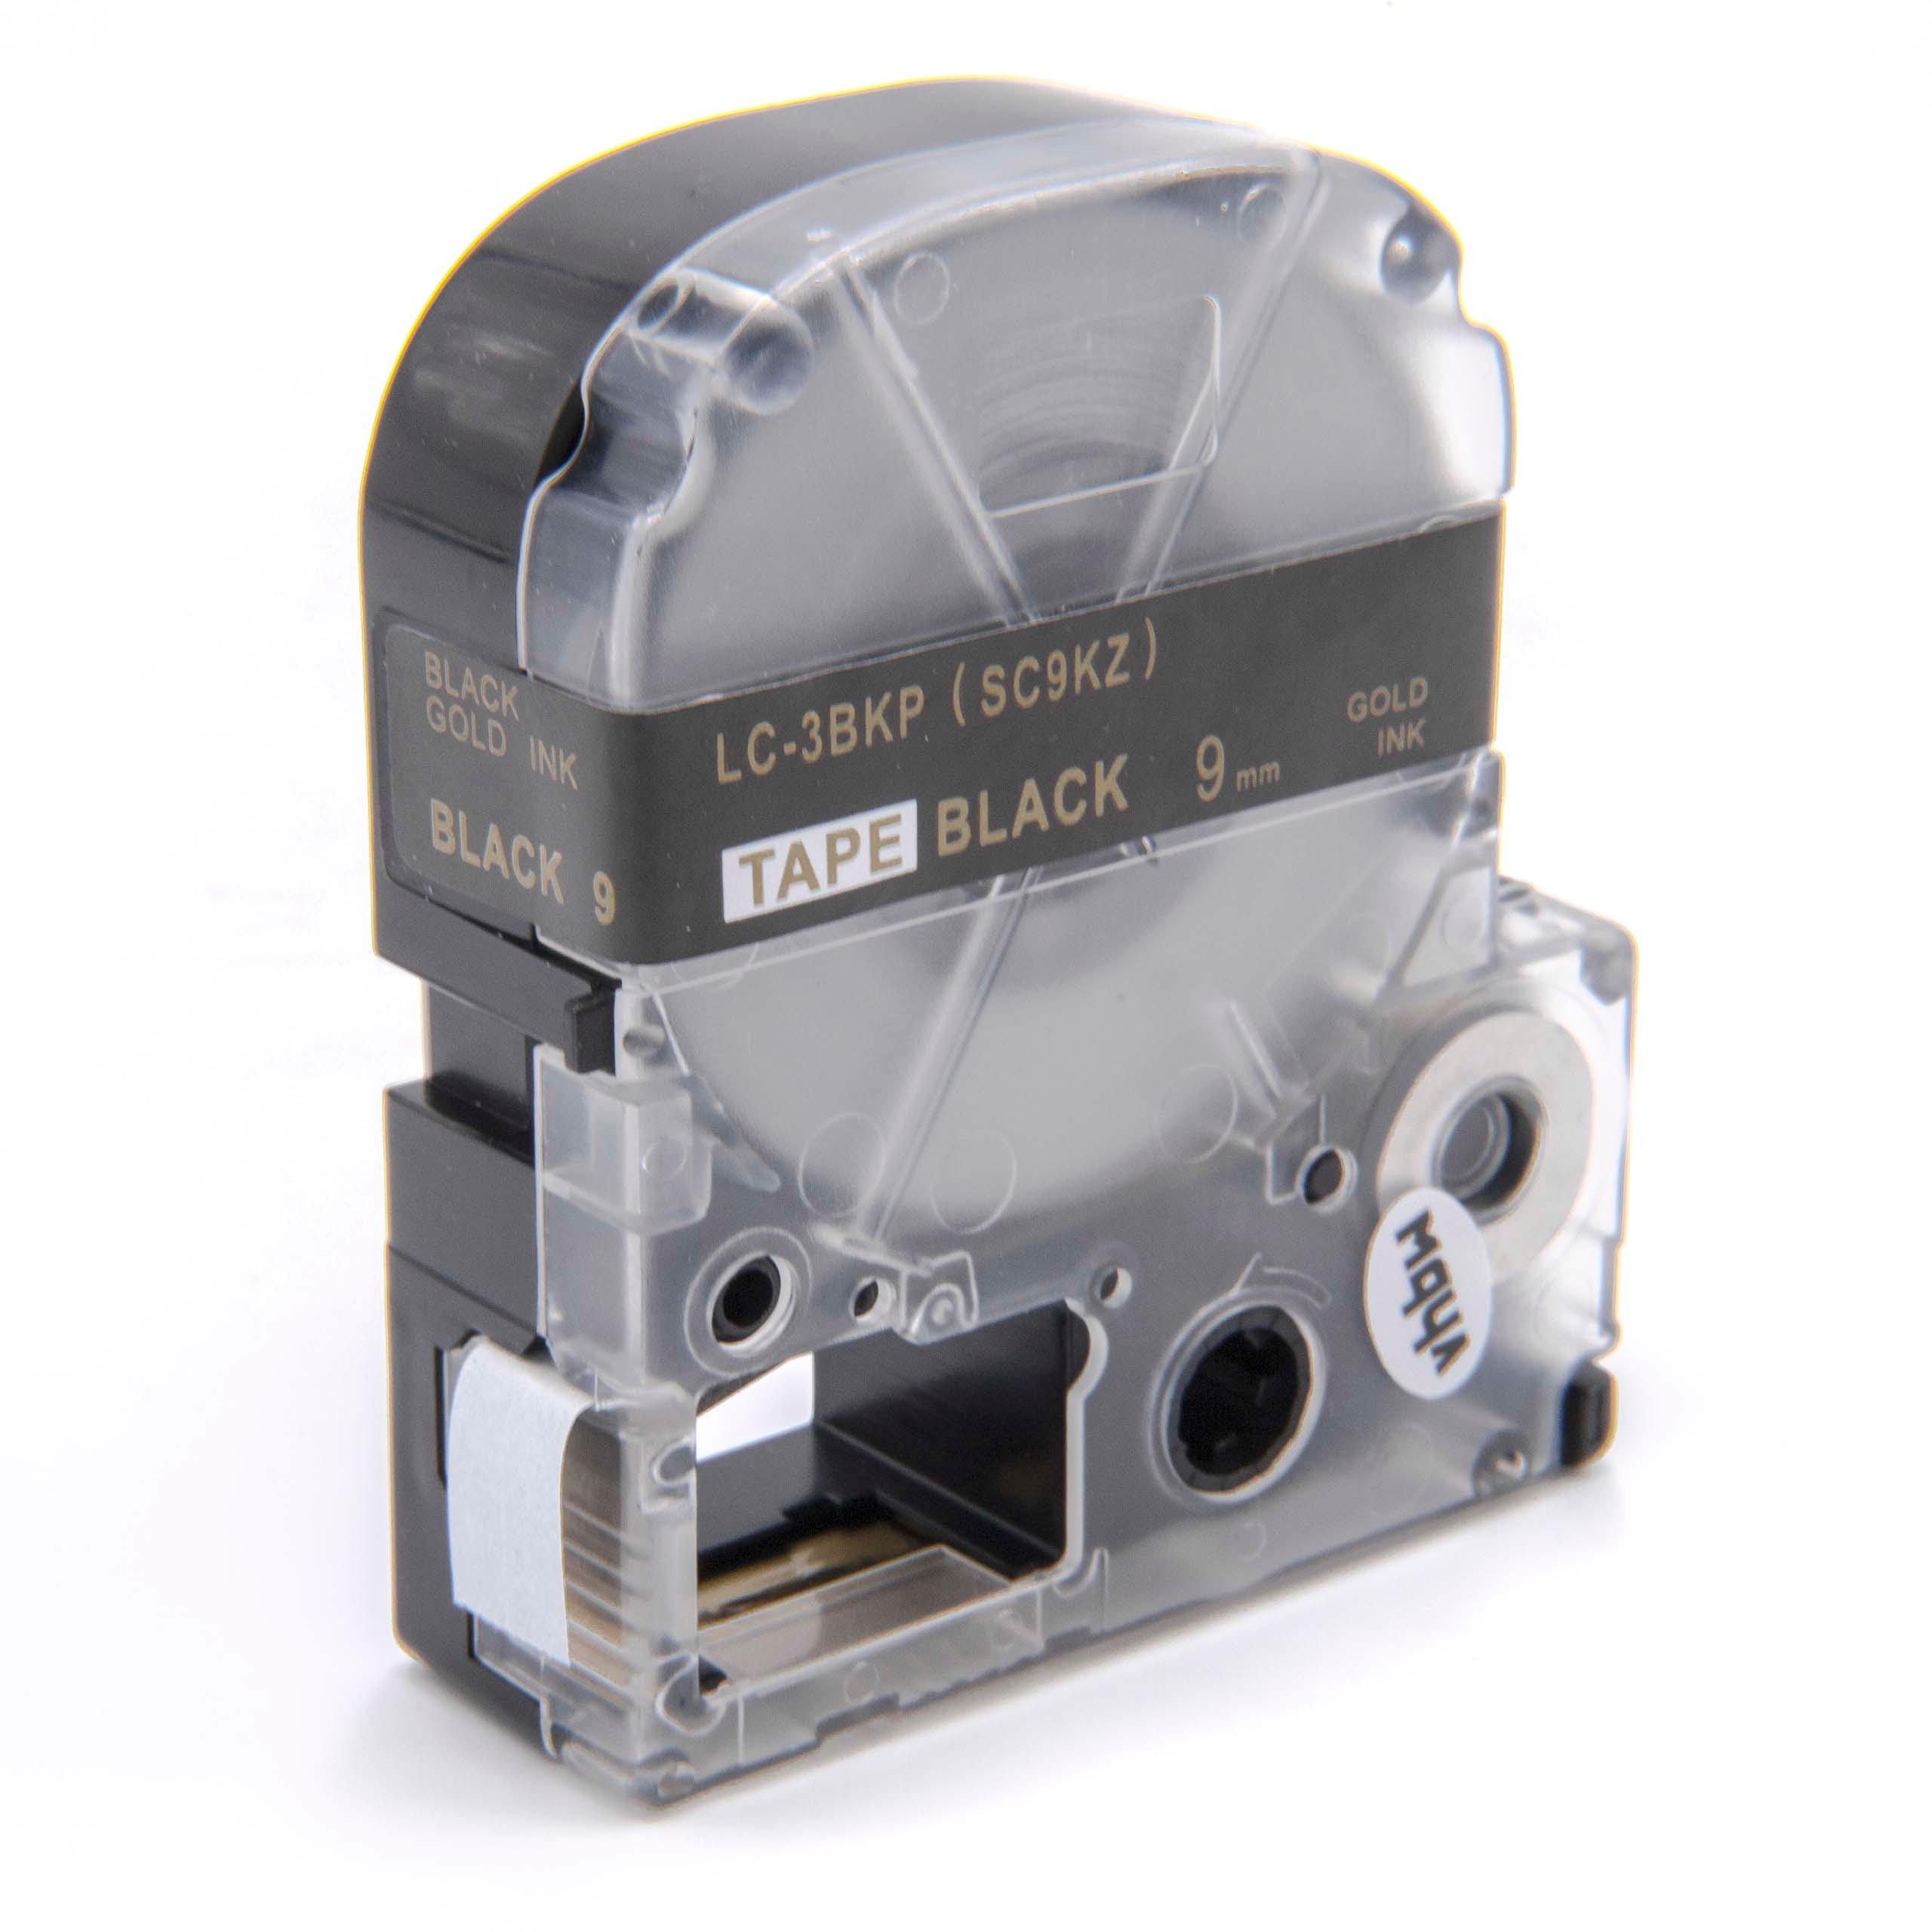 Cassette à ruban remplace Epson LC-3BKP - 9mm lettrage Or ruban Noir